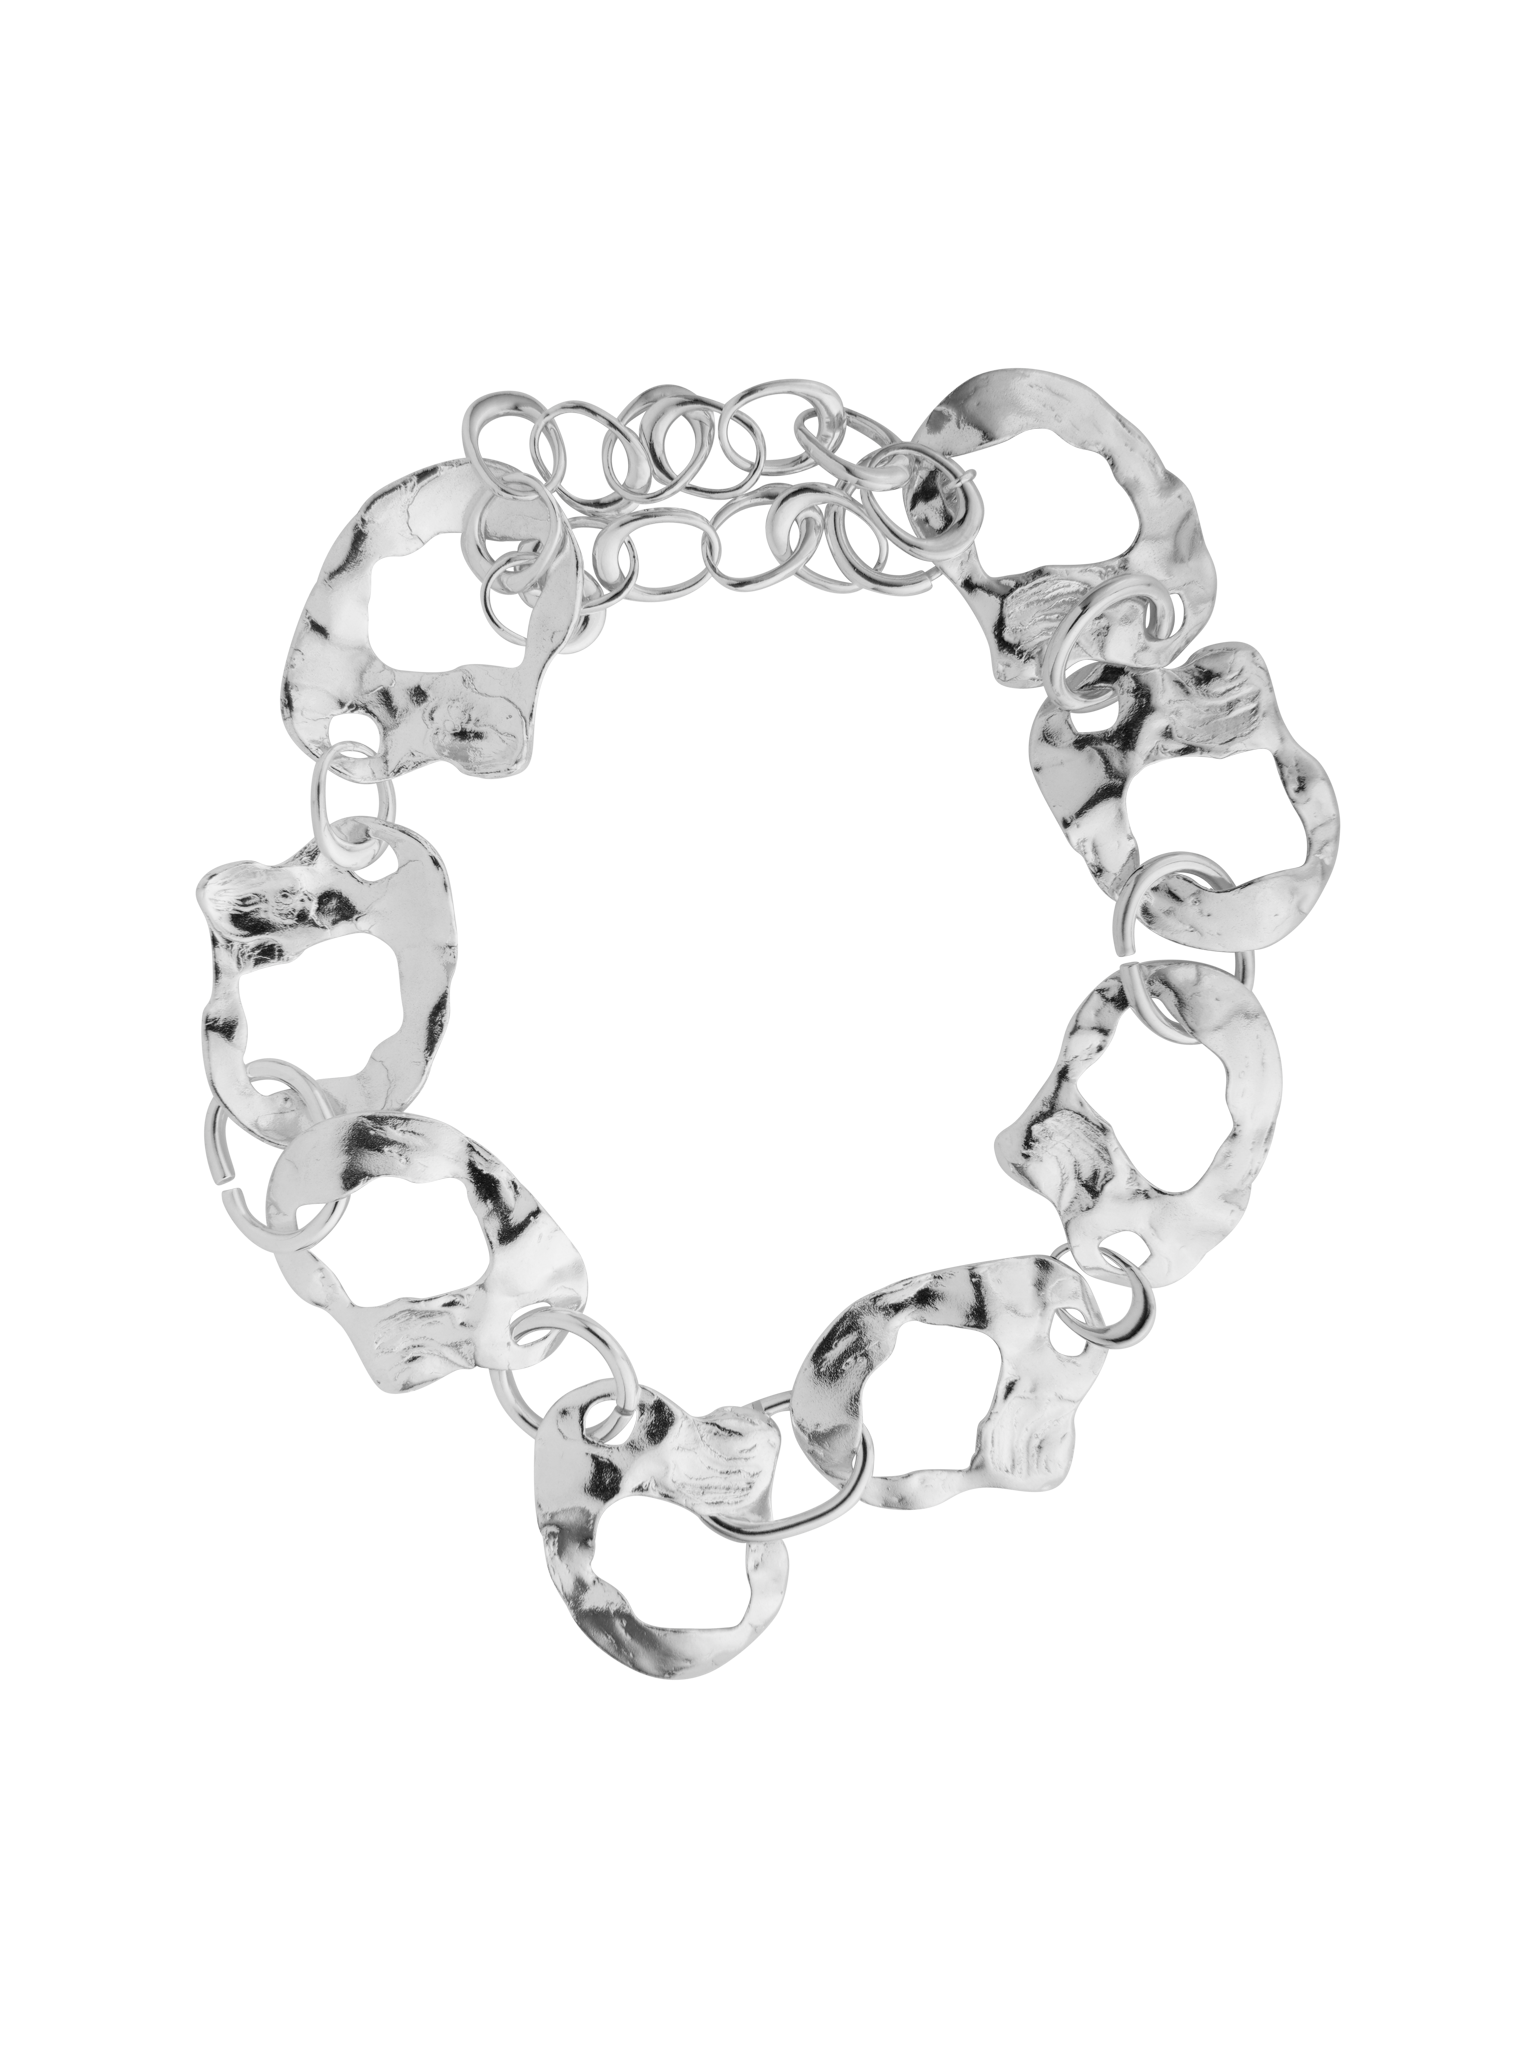 Virgil chain